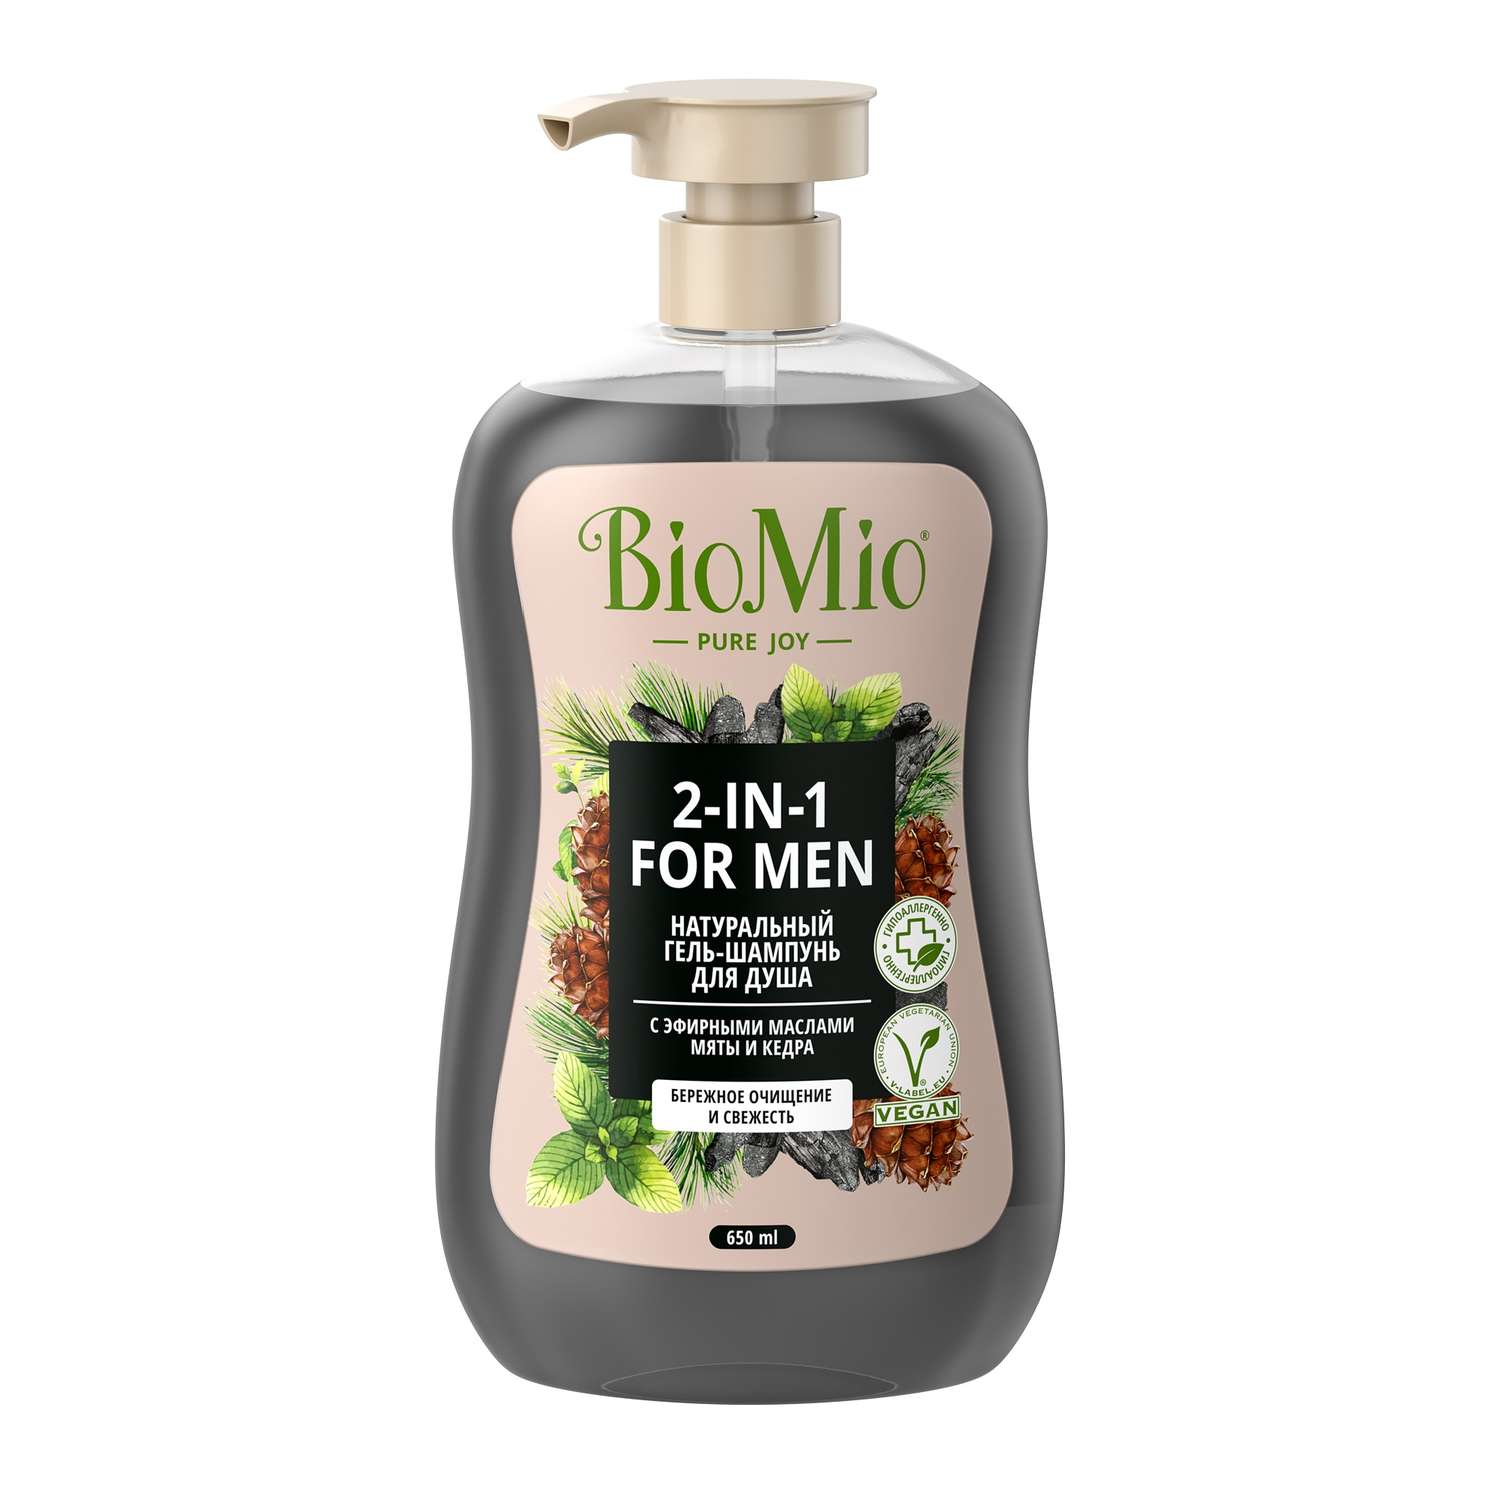 Гель-шампунь для душа BioMio Body and Hair мужской Мята и кедр 650мл - фото 1